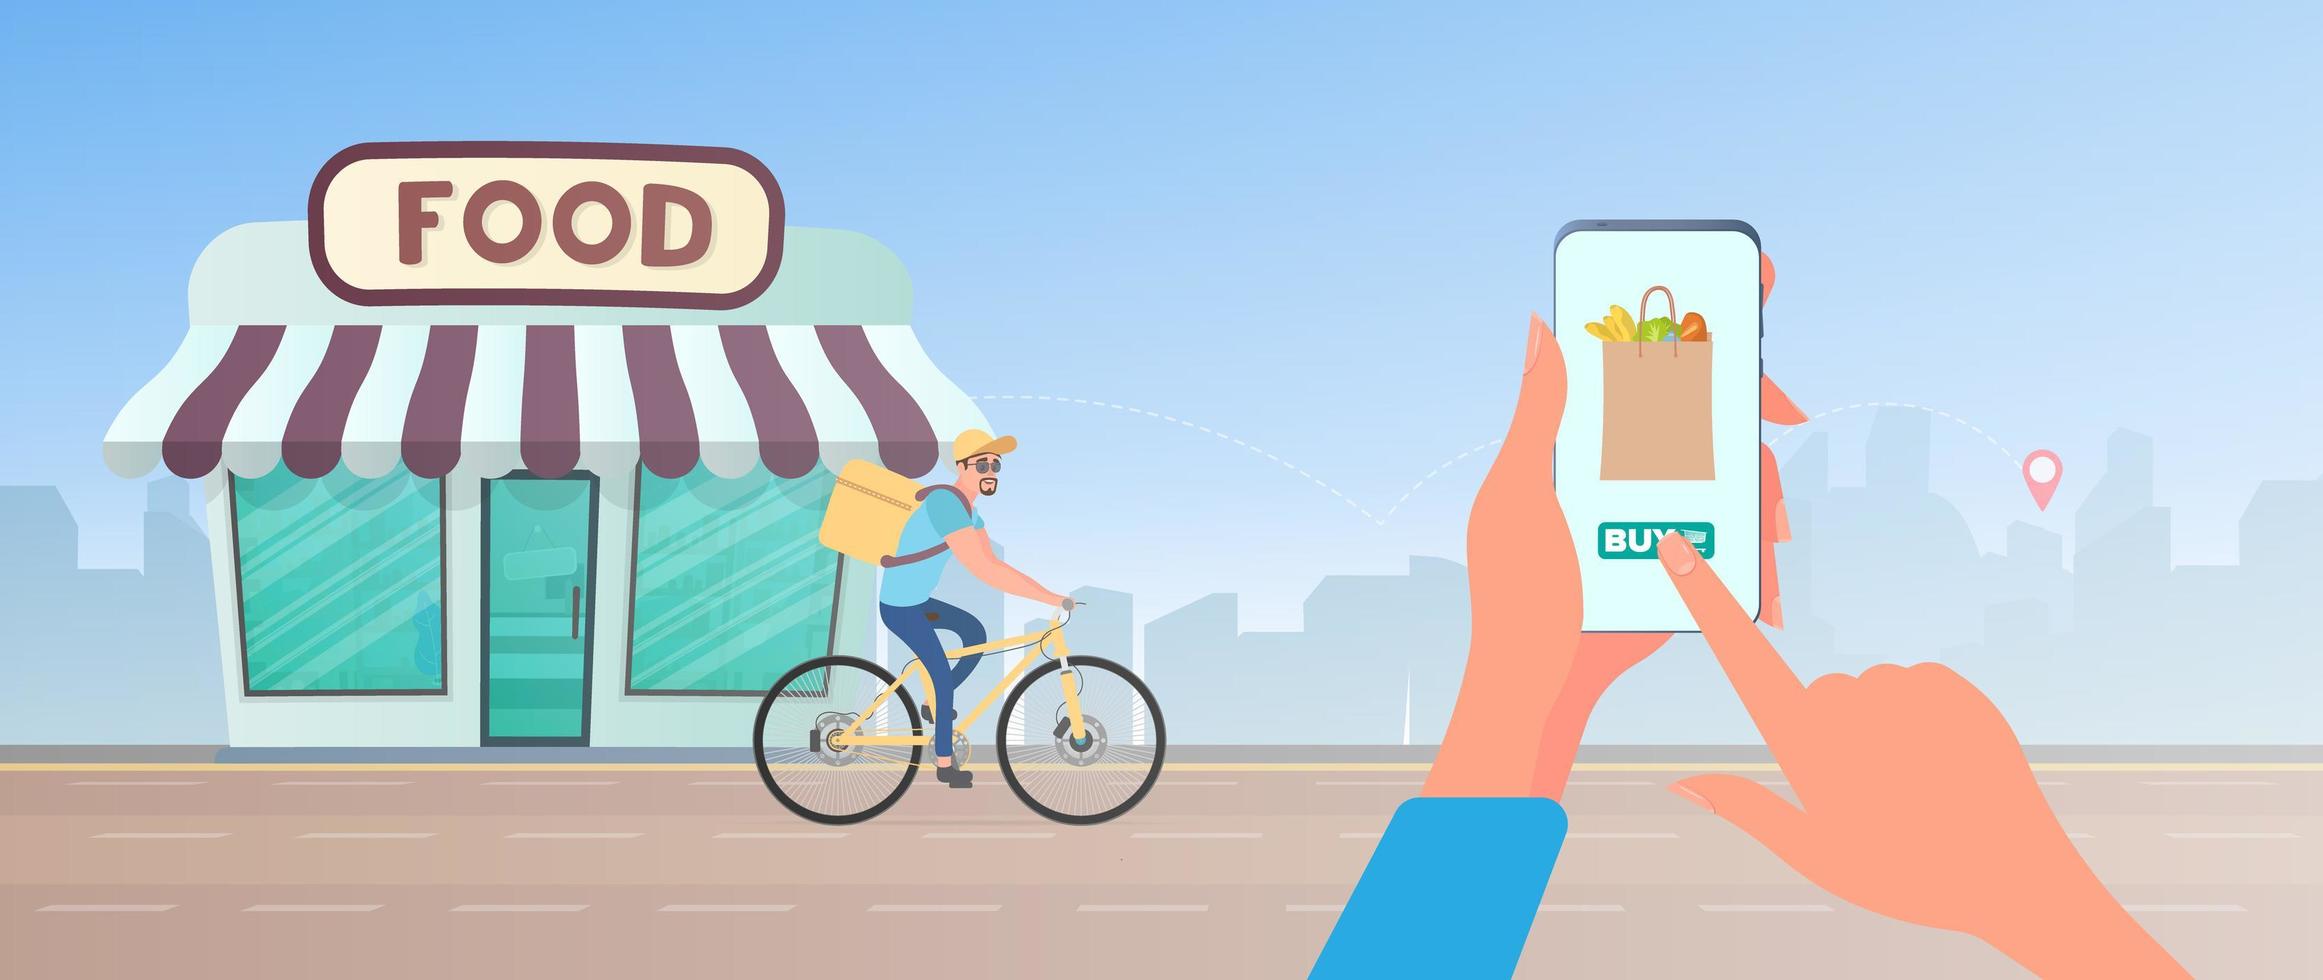 thuis eten bestellen. de man heeft het geluk om eten op een fiets te bestellen. hand houdt smartphone. levering aan huis, leveringsconcept. vector. vector